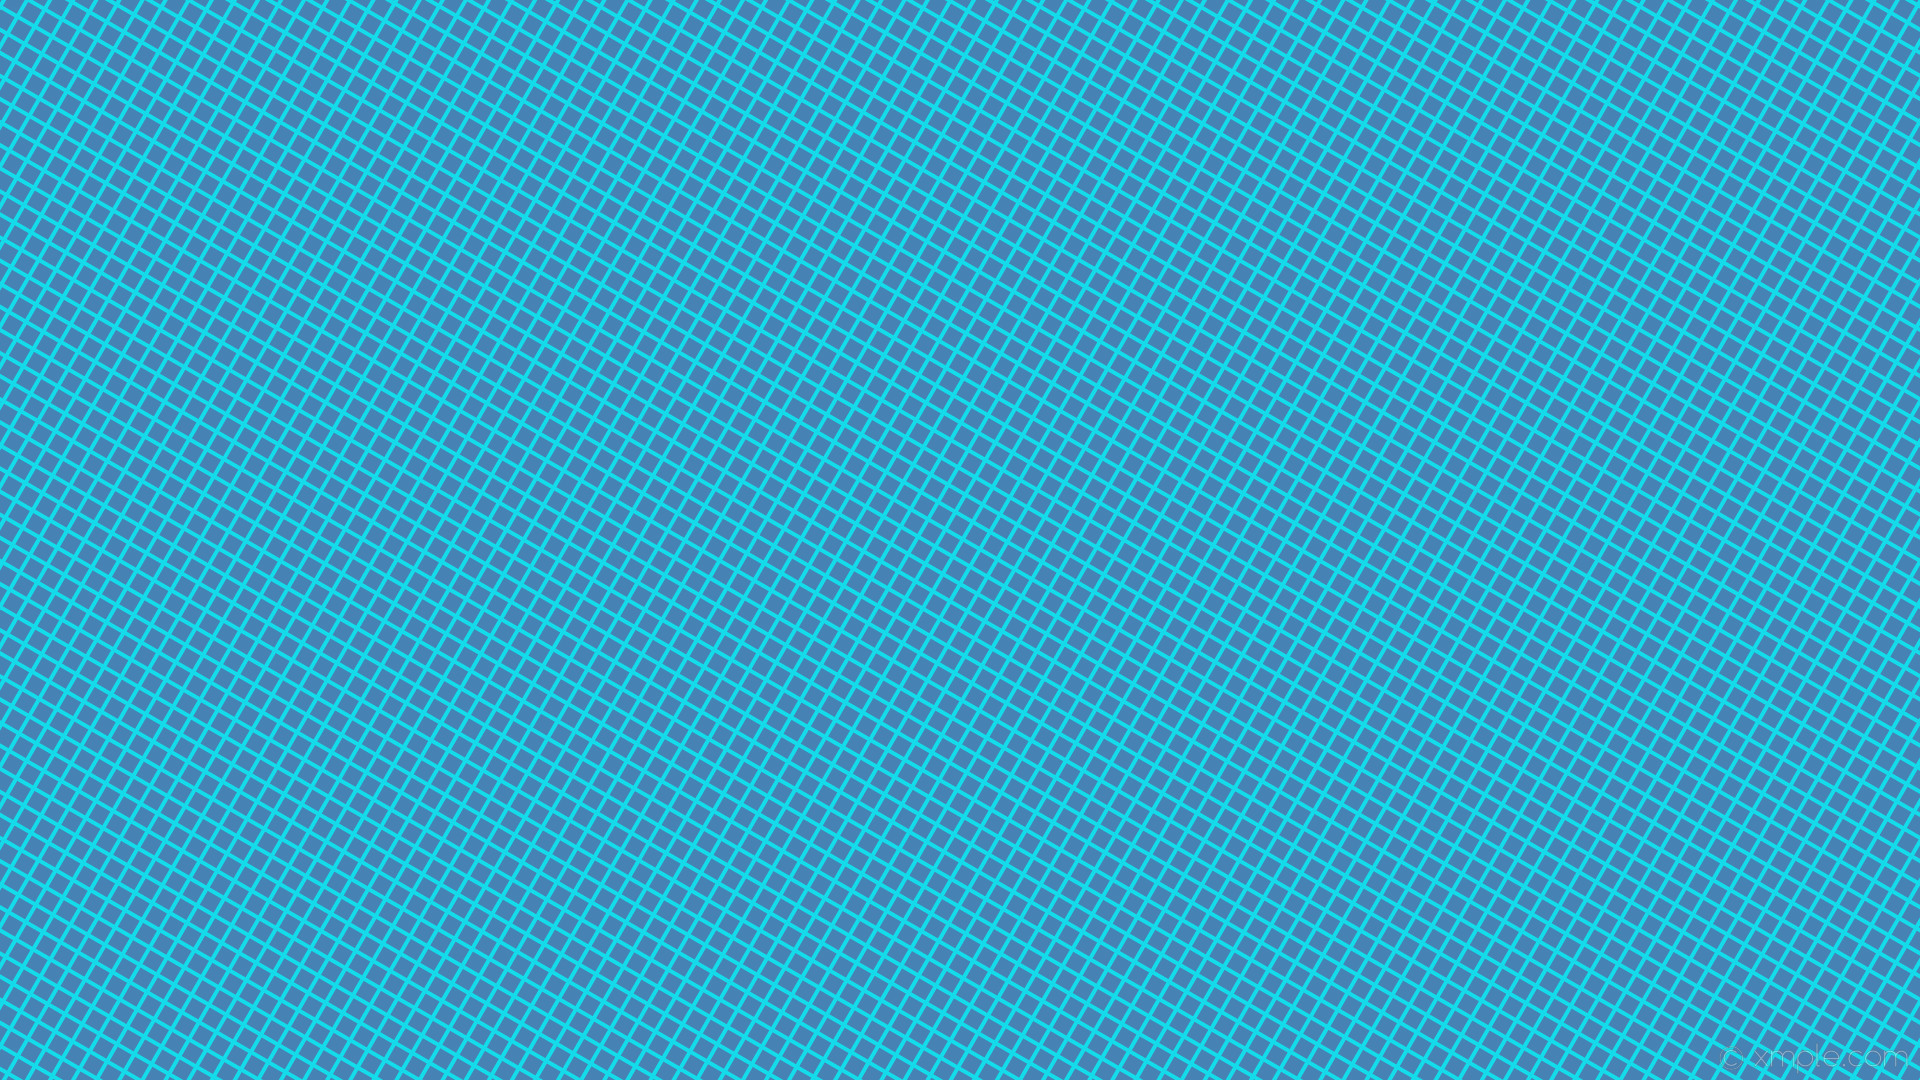 1920x1080 wallpaper grid graph paper blue steel blue aqua cyan #4682b4 #00ffff 60Â° 4px